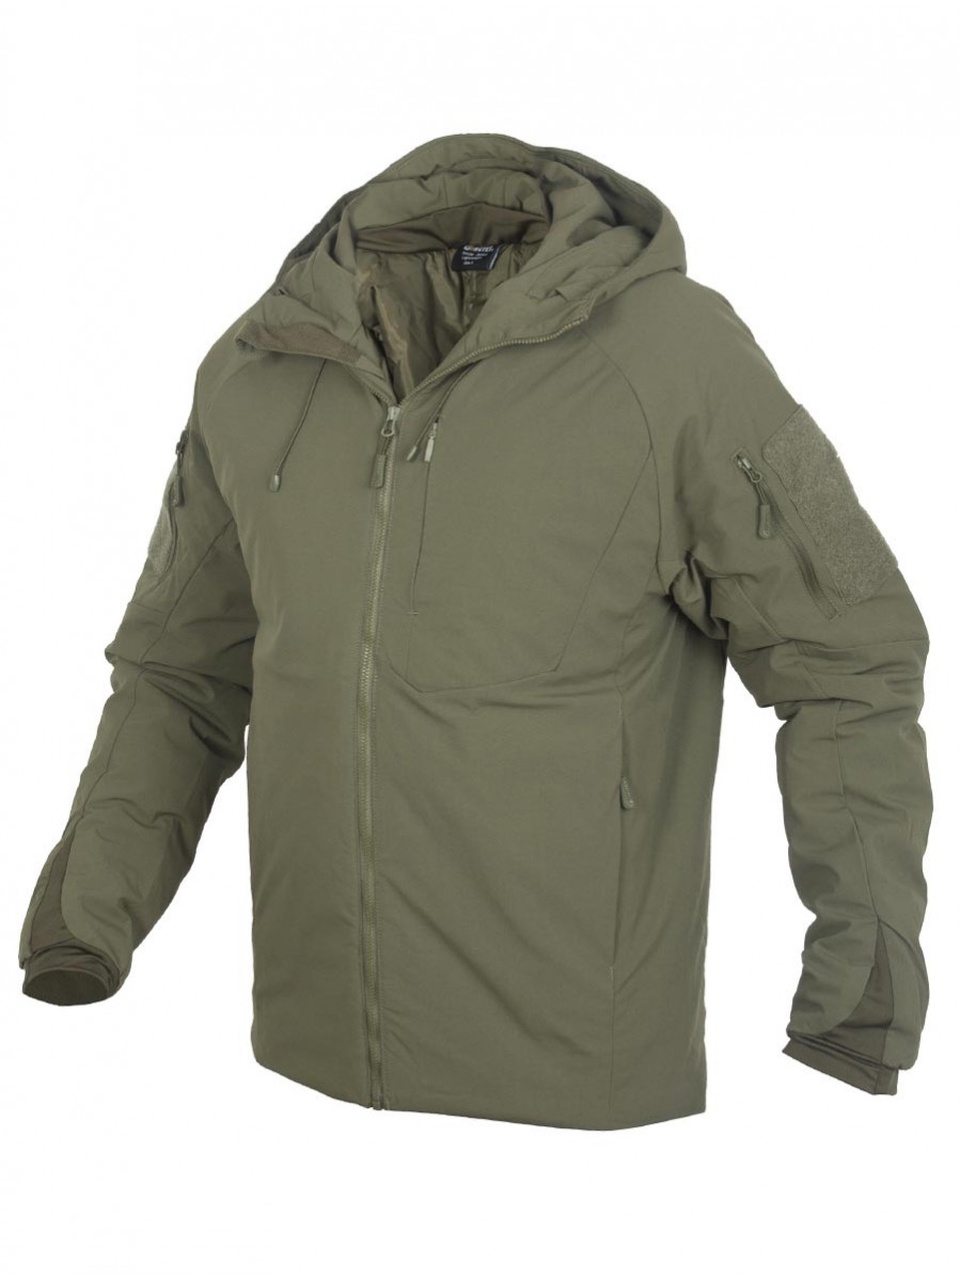 Куртка мужская Winter Light 3й слой - 8 700 ₽, заказать онлайн.